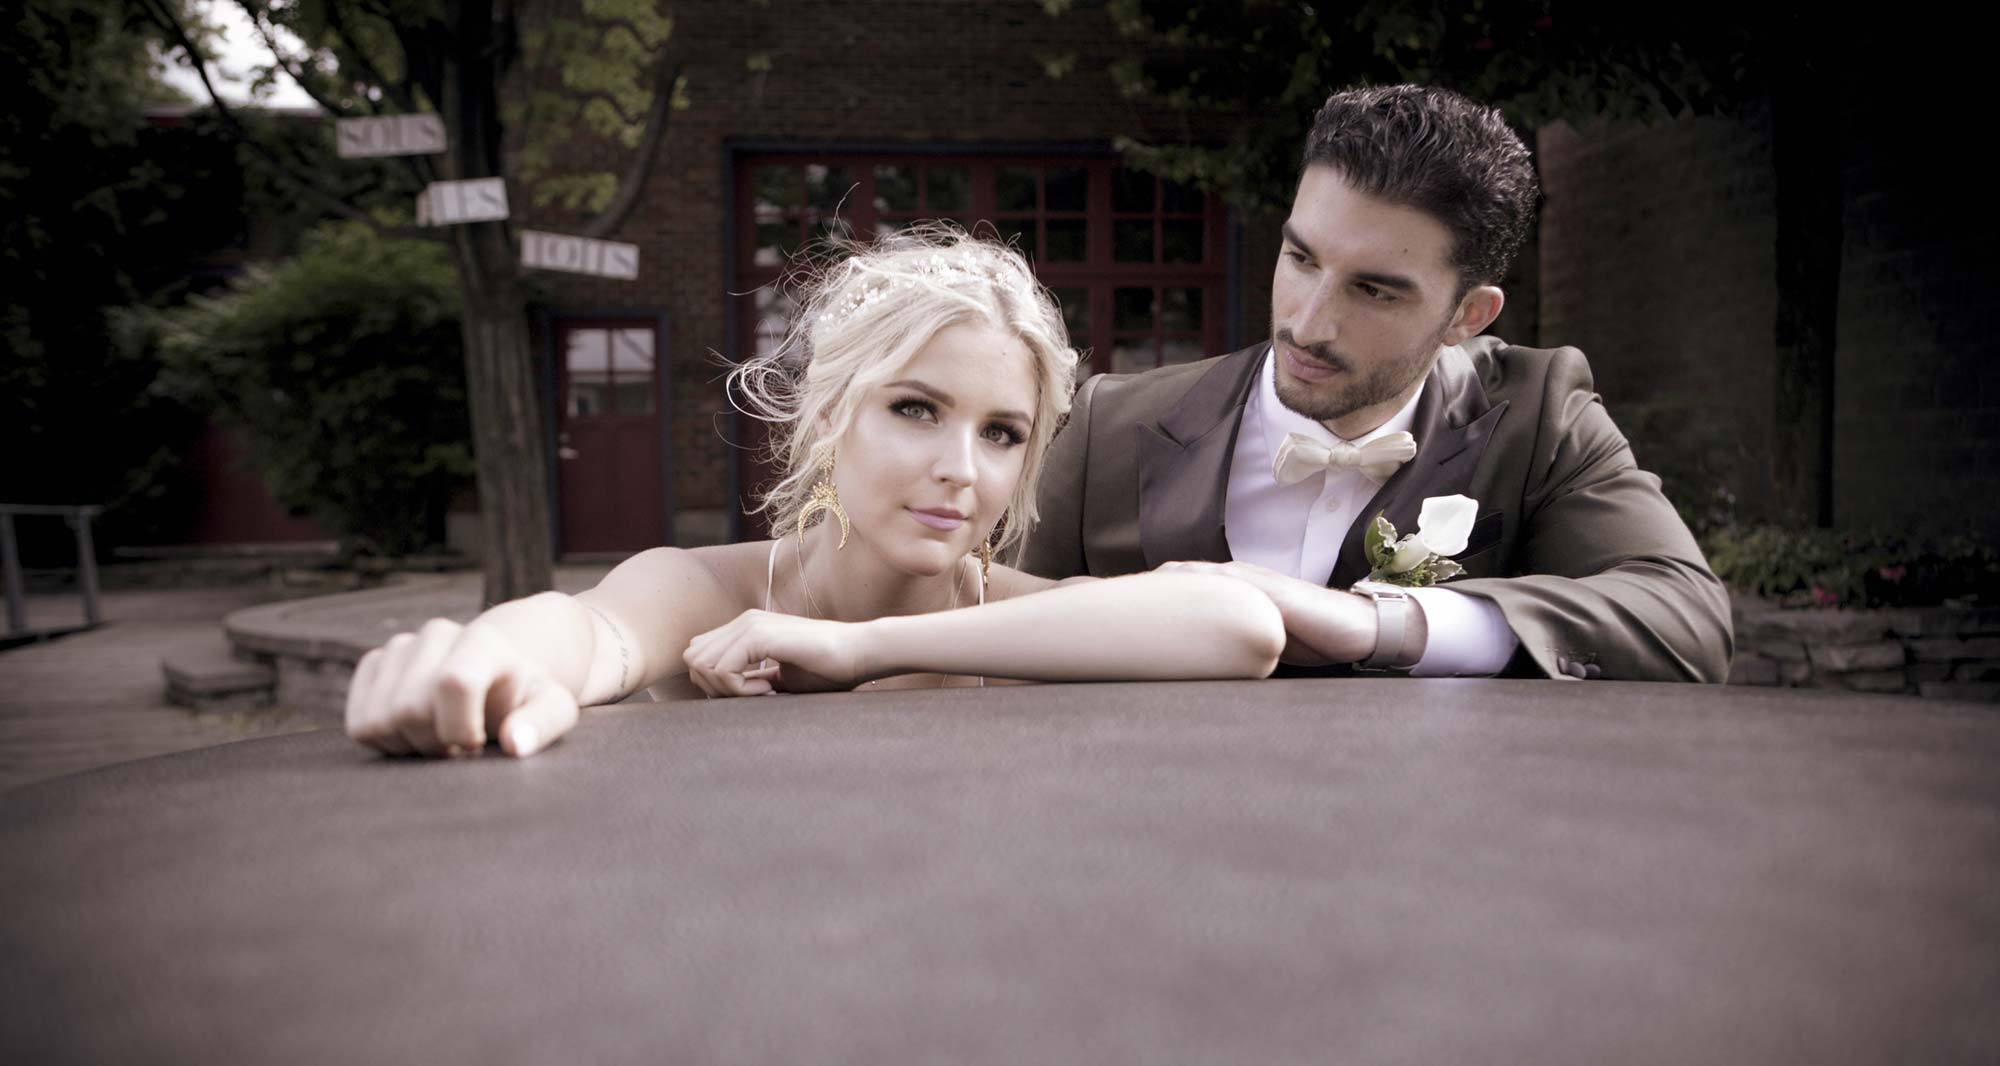 Weddings - Lyudmyla & Joey